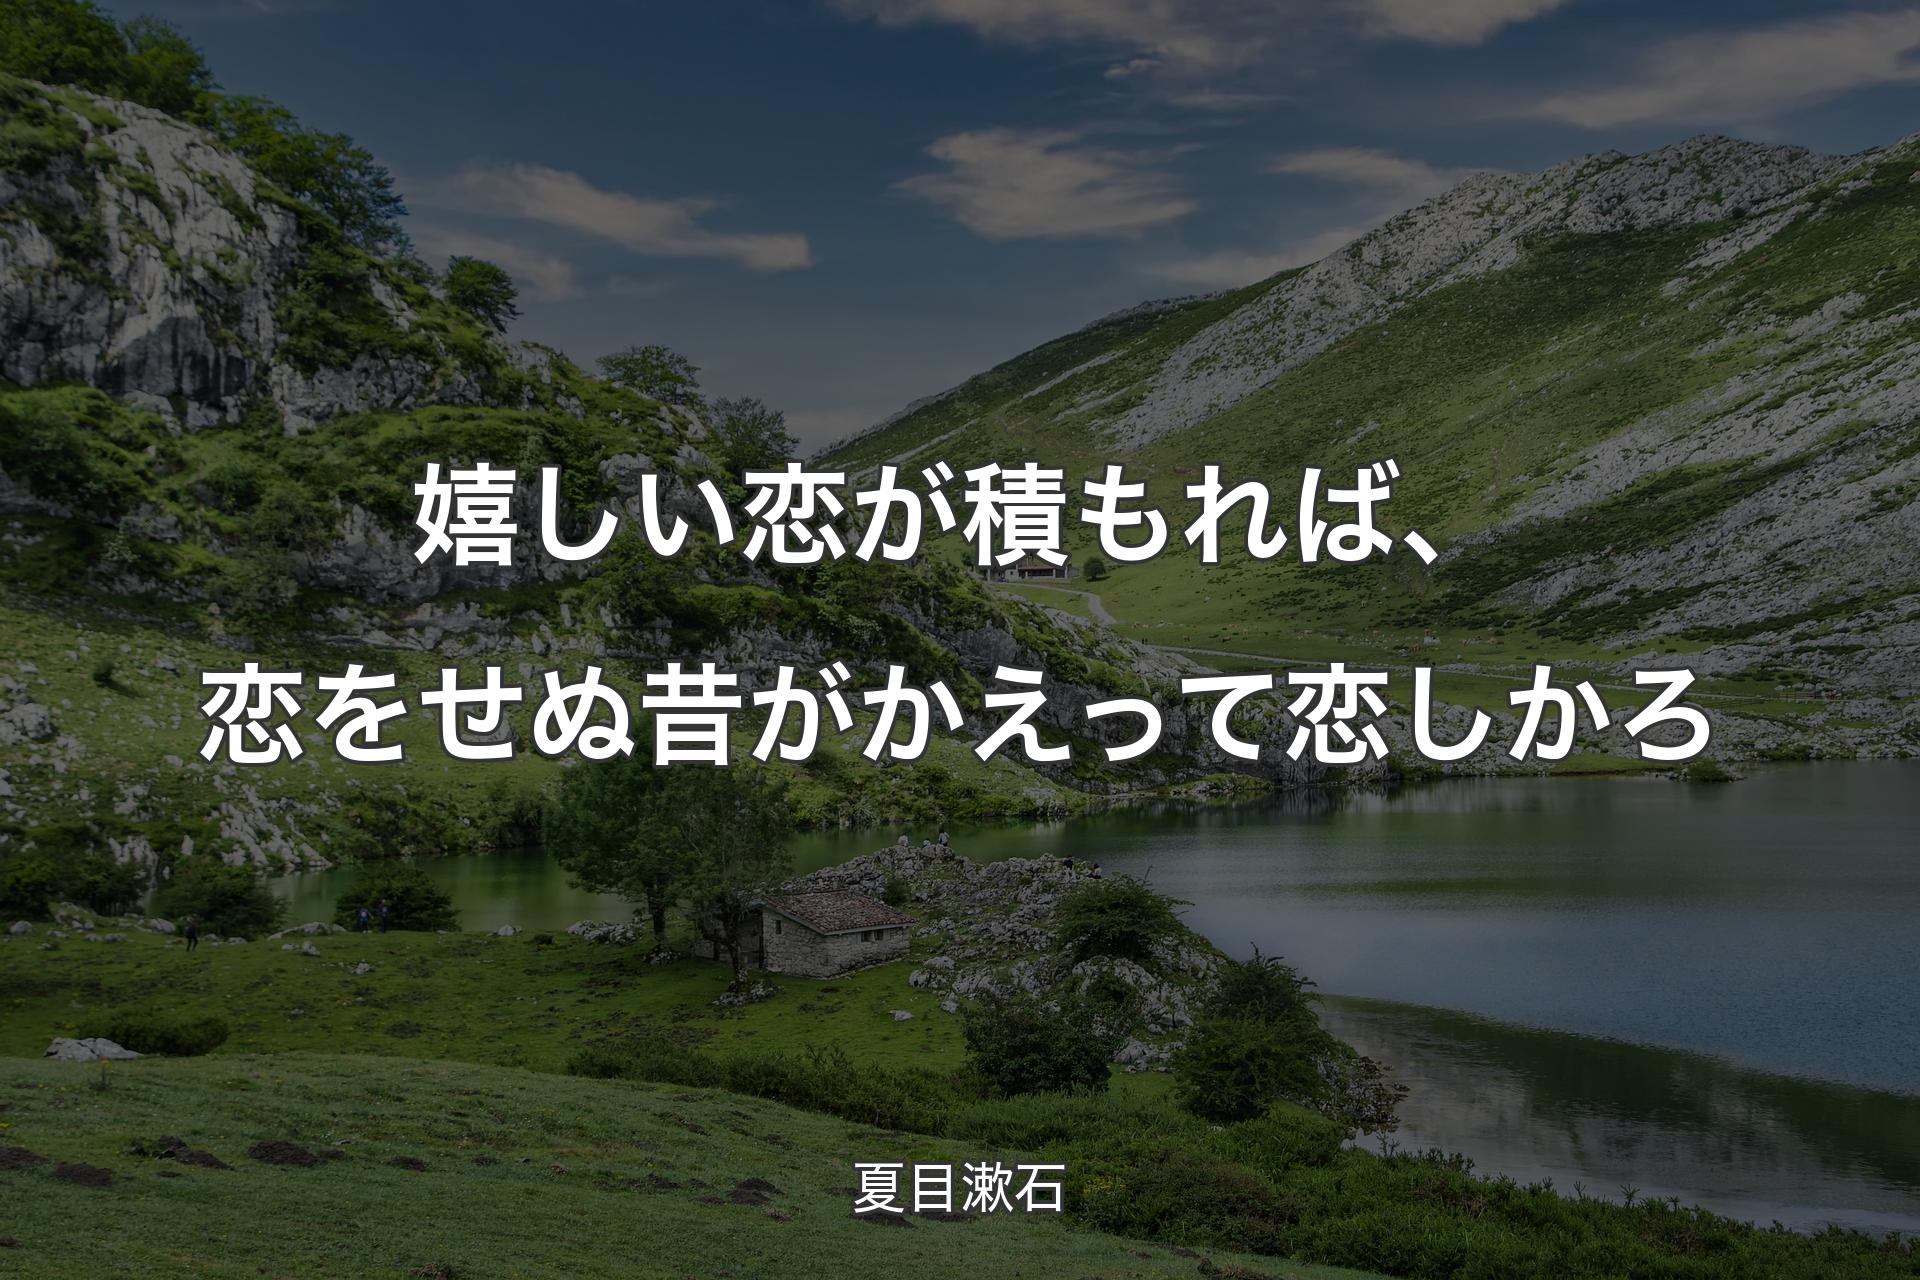 【背景1】嬉しい恋が積もれば、恋をせぬ昔がかえって恋しかろ - 夏目漱石